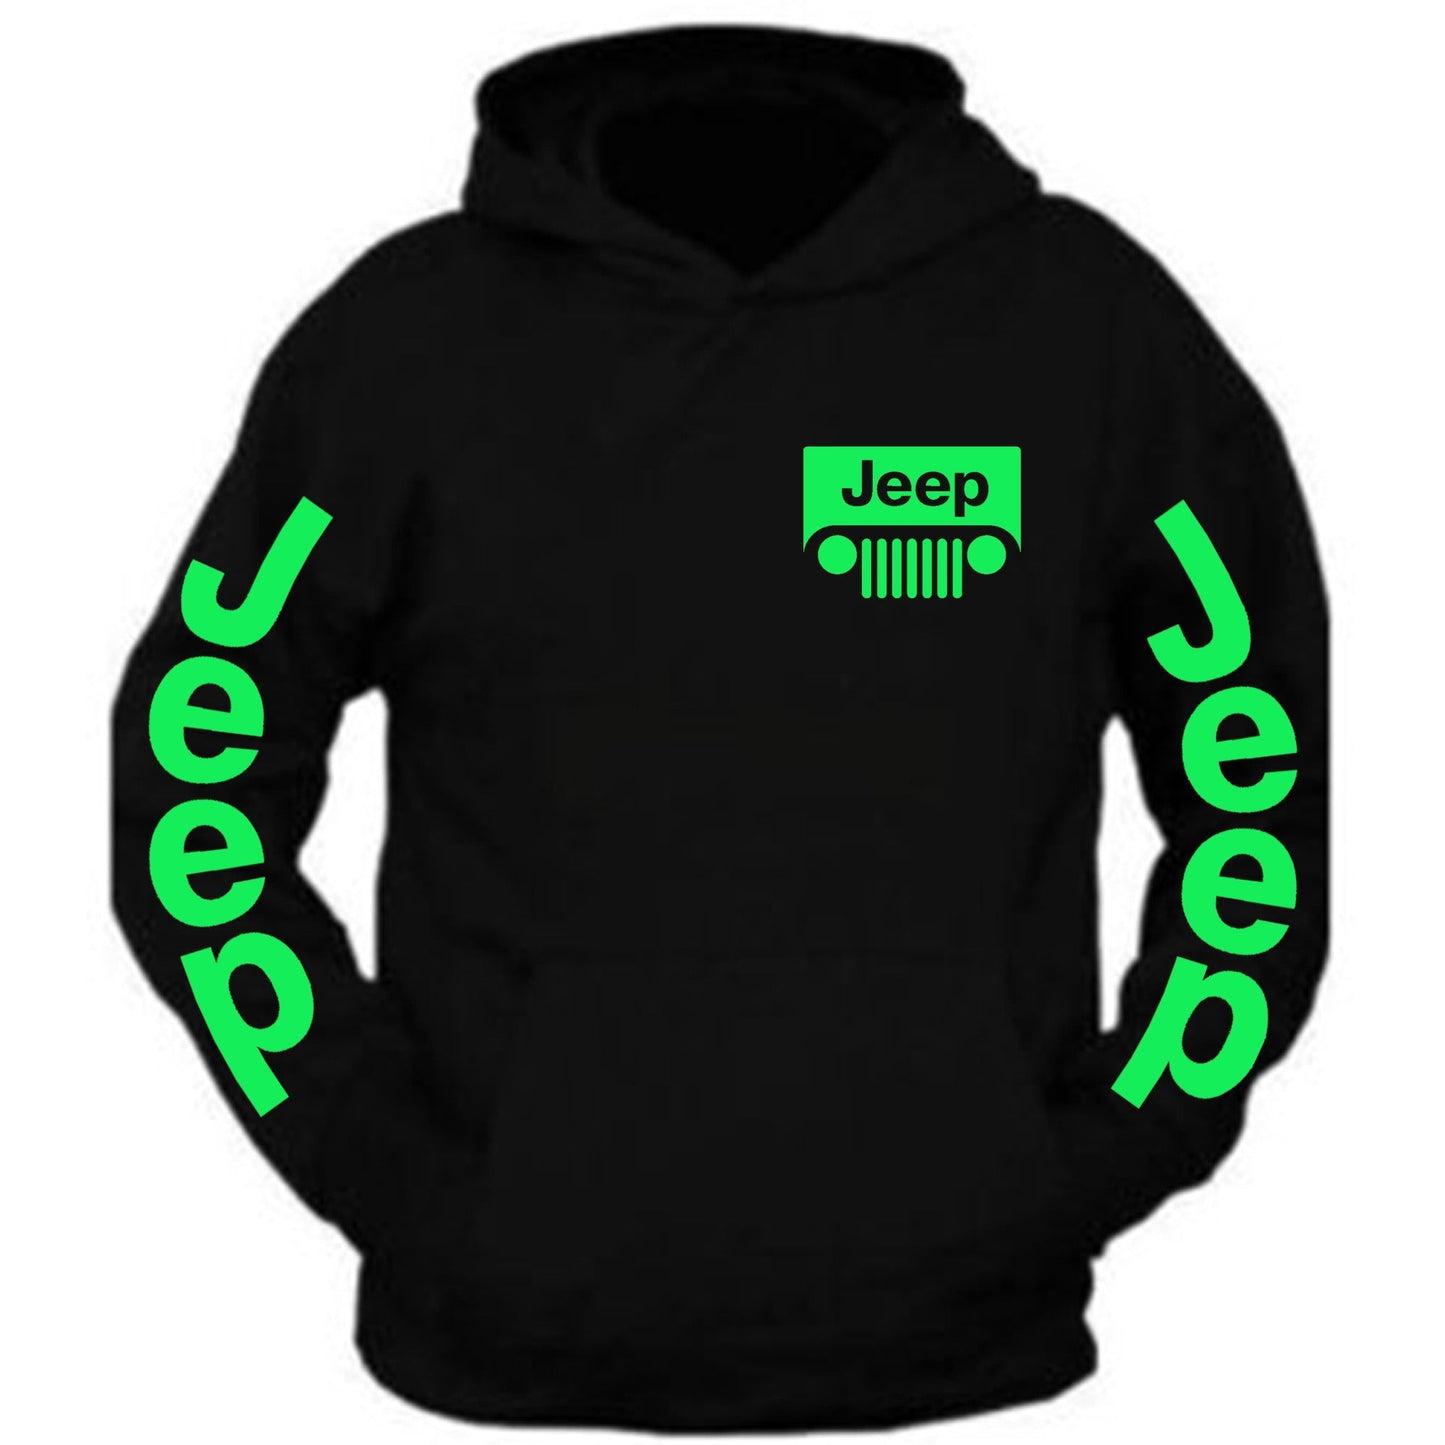 New All Colors Jeep tee Black Hoodie S-2XL 4x4 Off Road Black Hoodie Hooded Sweatshirt